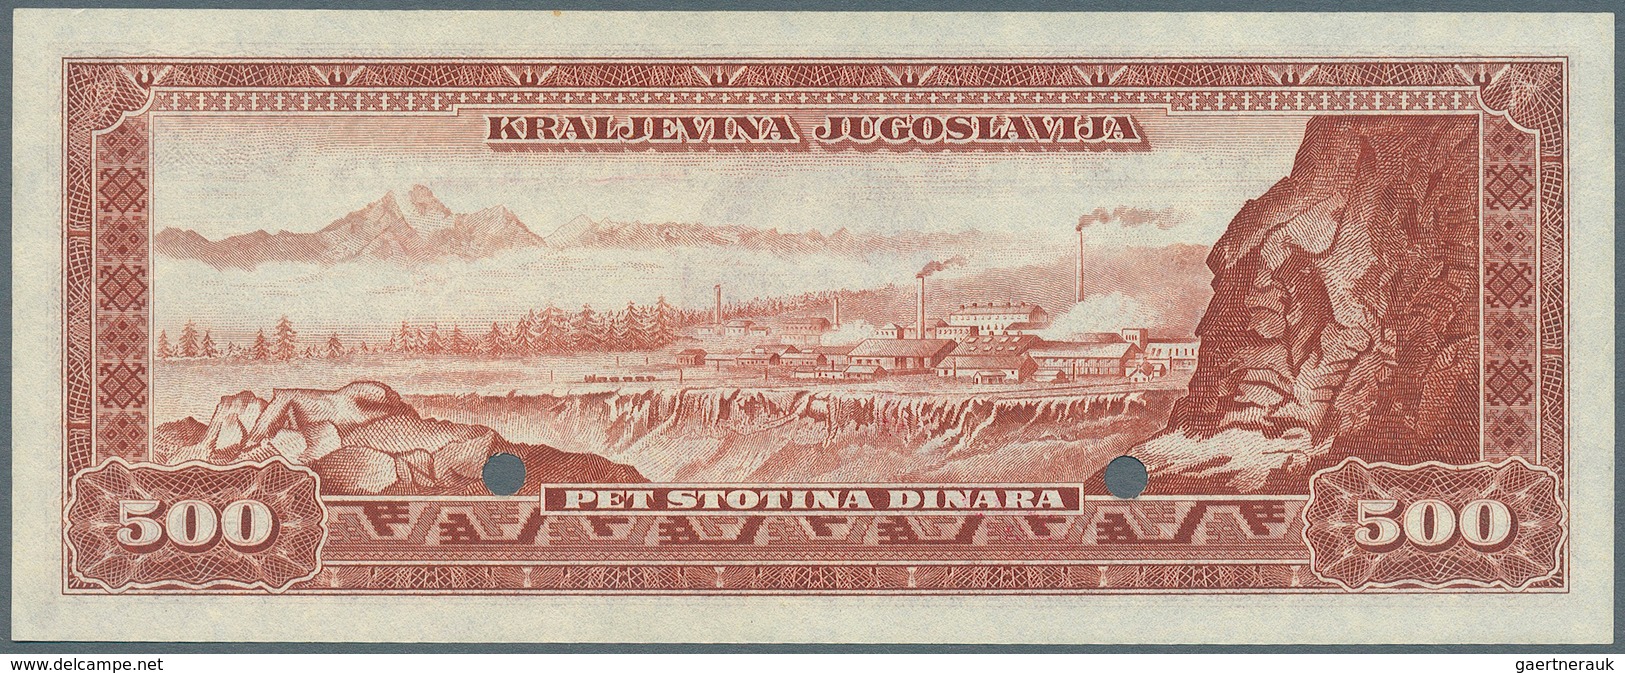 Yugoslavia / Jugoslavien: Not Issued Banknote 500 Dinara Series 1943 Specimen, P.35Es, In Perfect UN - Yugoslavia